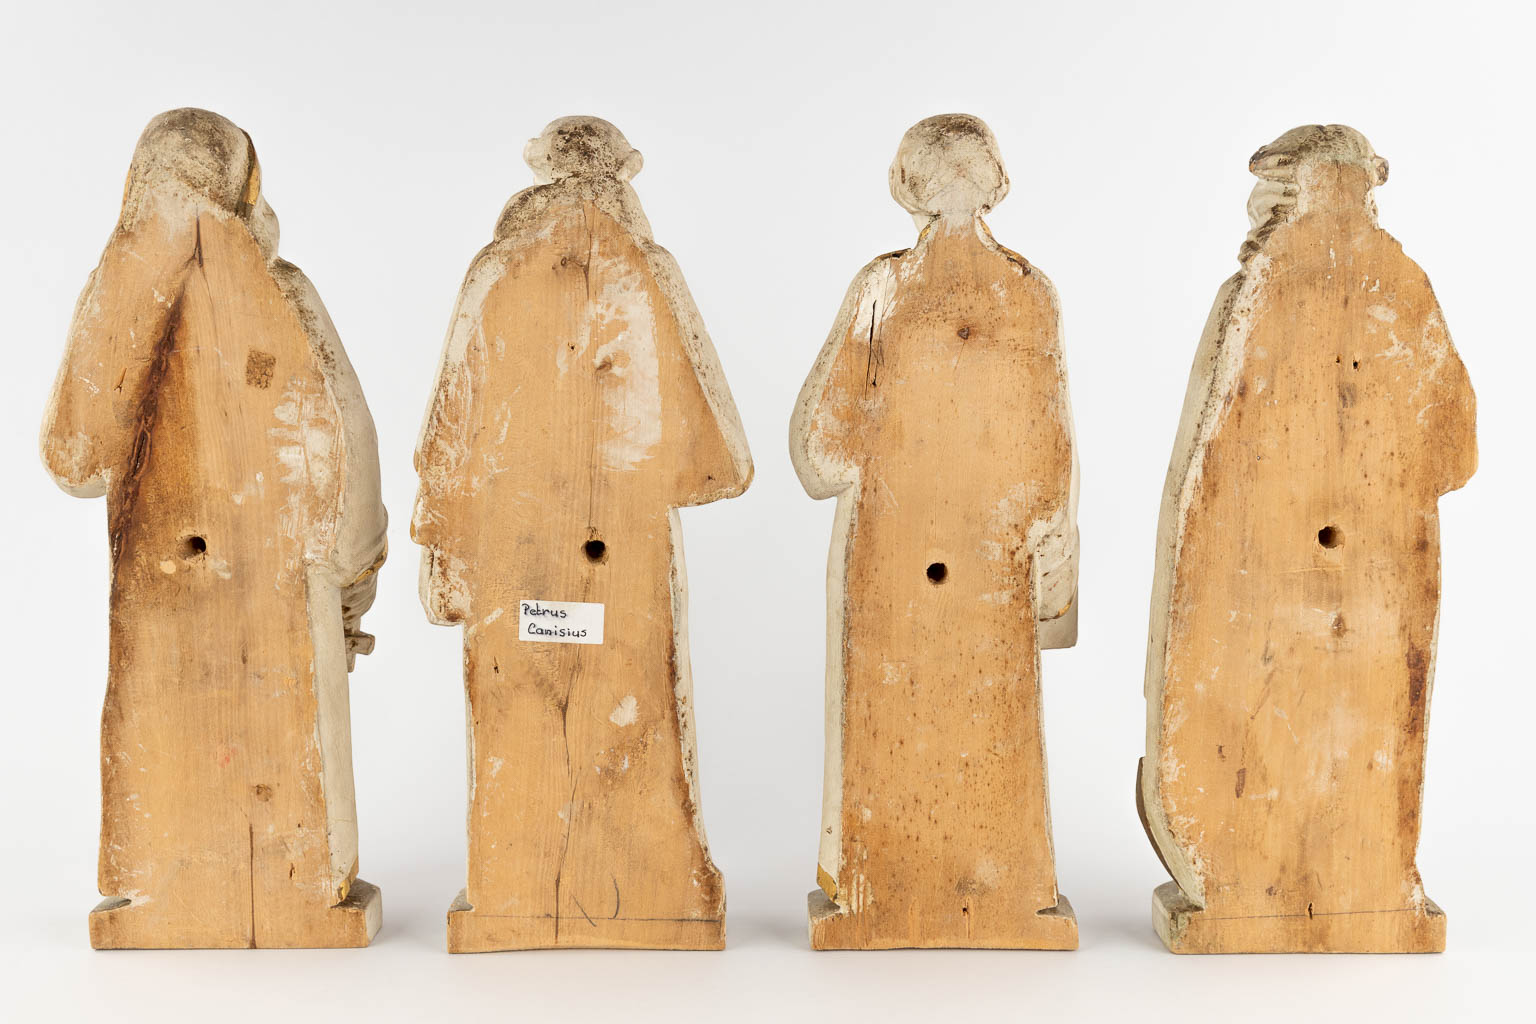 Vier gesculpteerde heiligenfiguren, 19de eeuw. (H:39 cm)